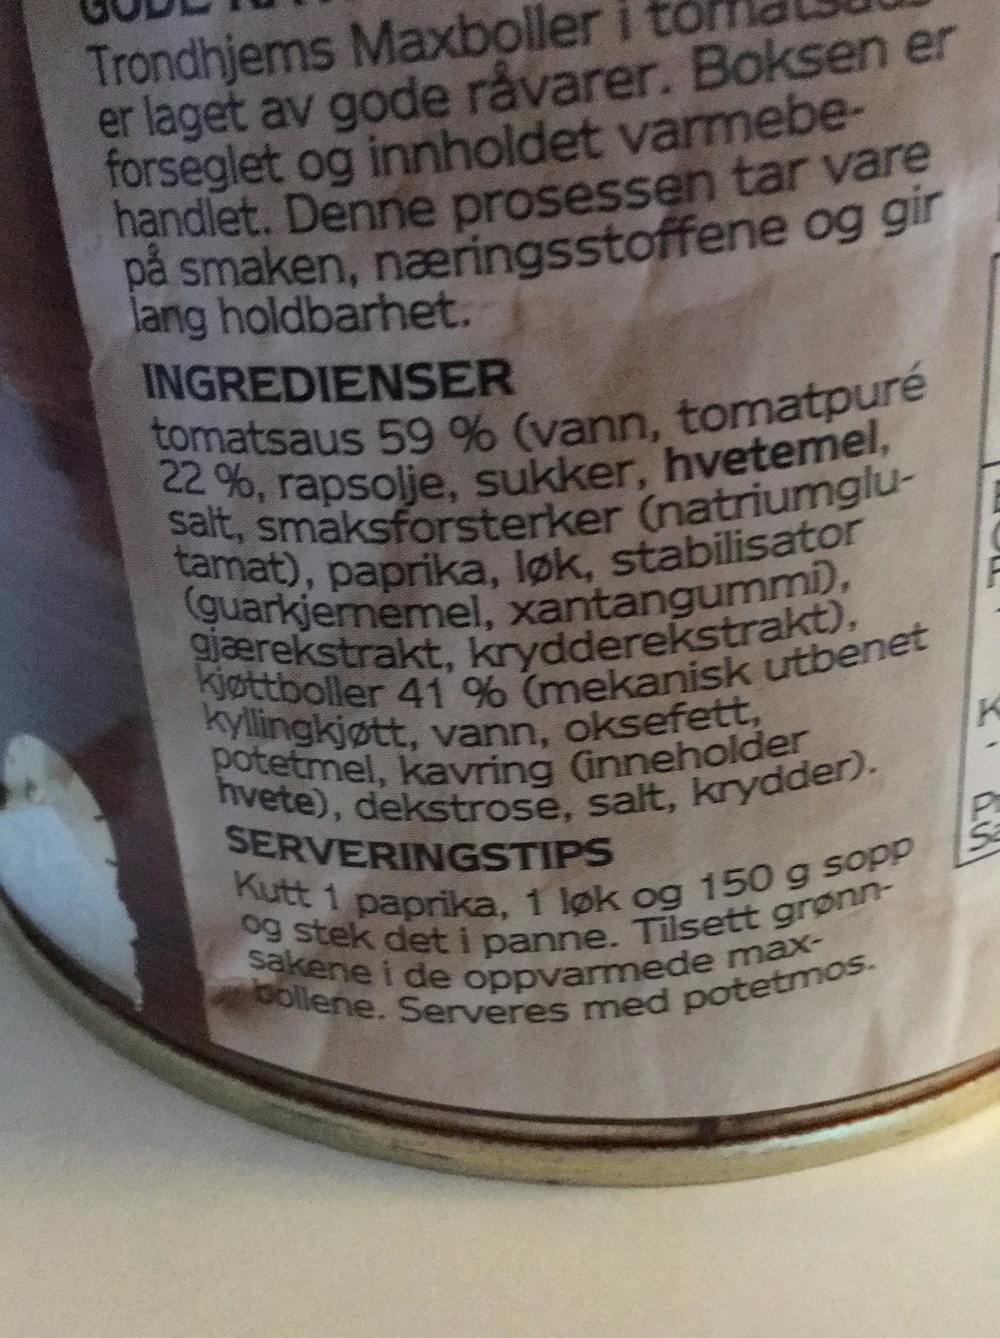 Ingredienslisten til Trondhjems Maxiboller i tomatsaus